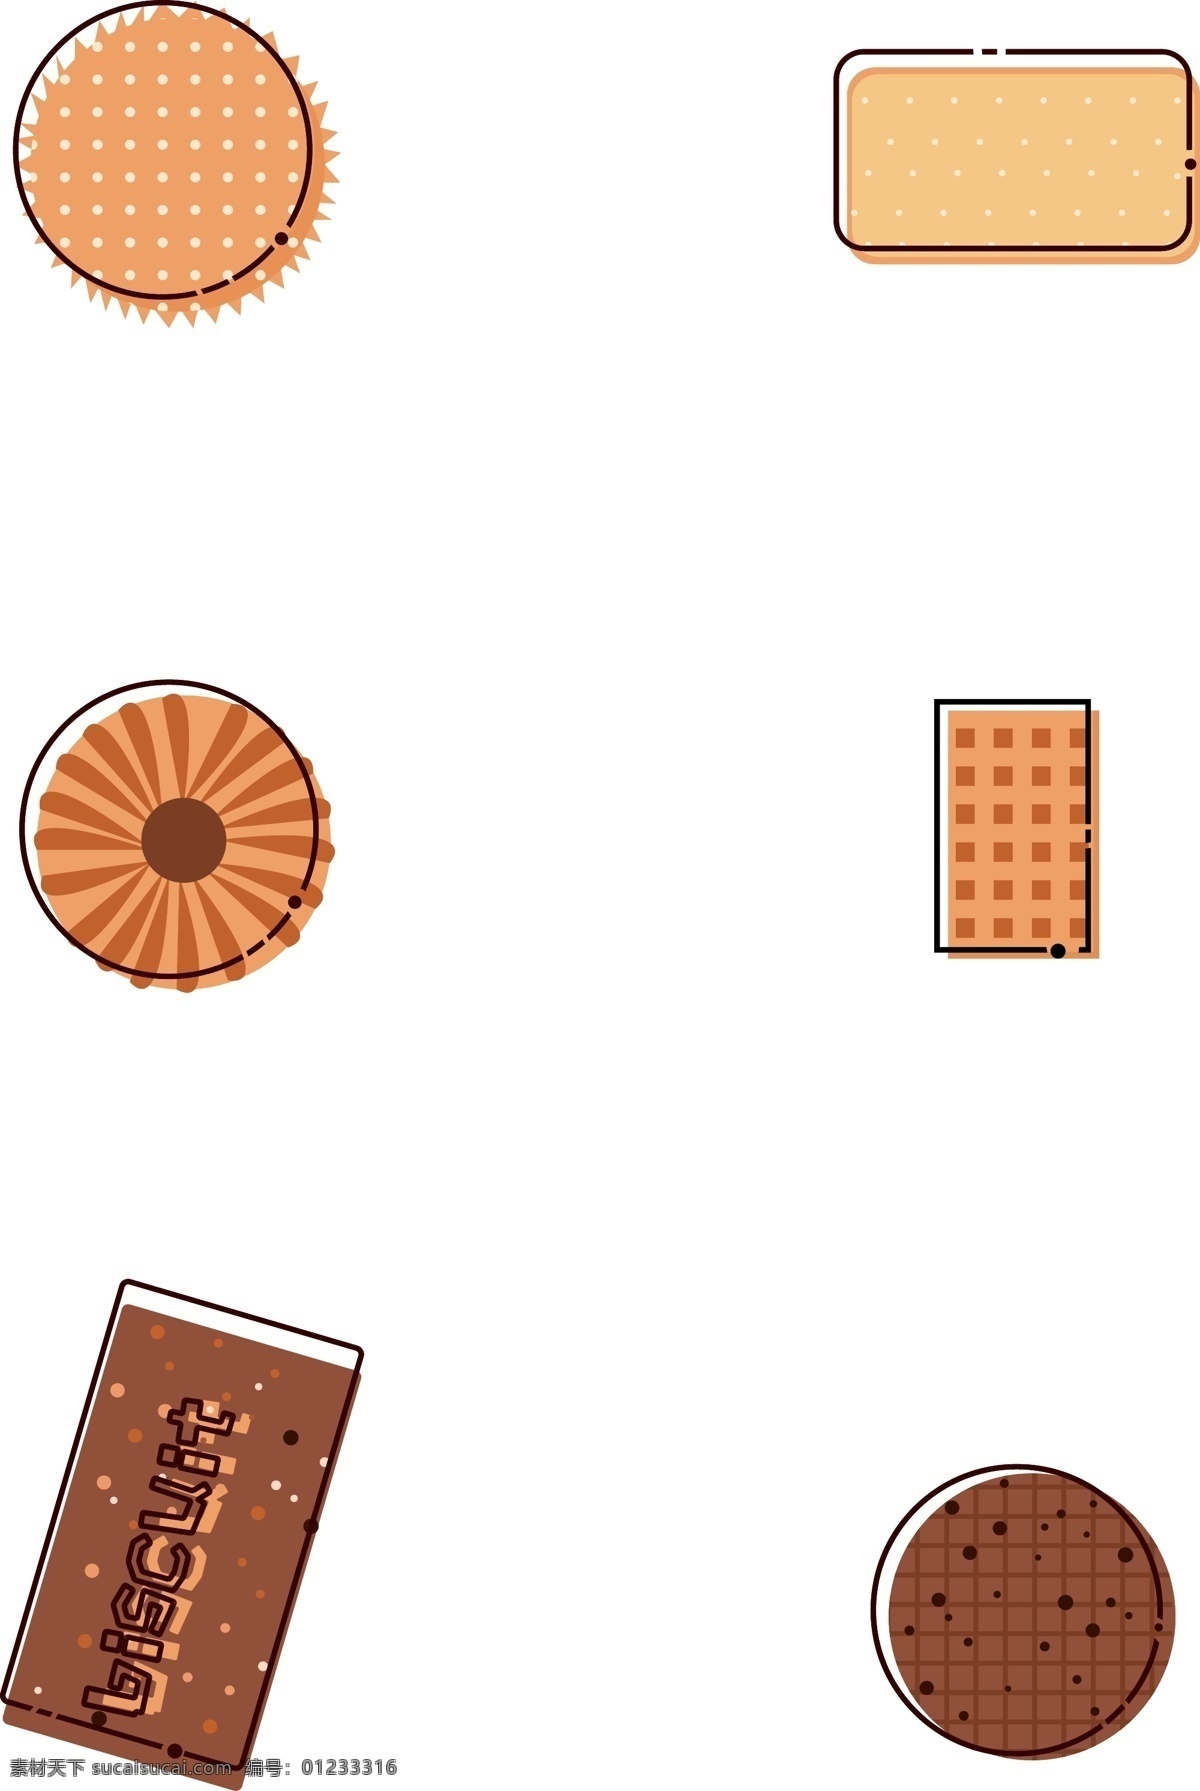 矢量 简约 可爱 卡通 美食 食物 饼干 曲奇 巧克力饼干